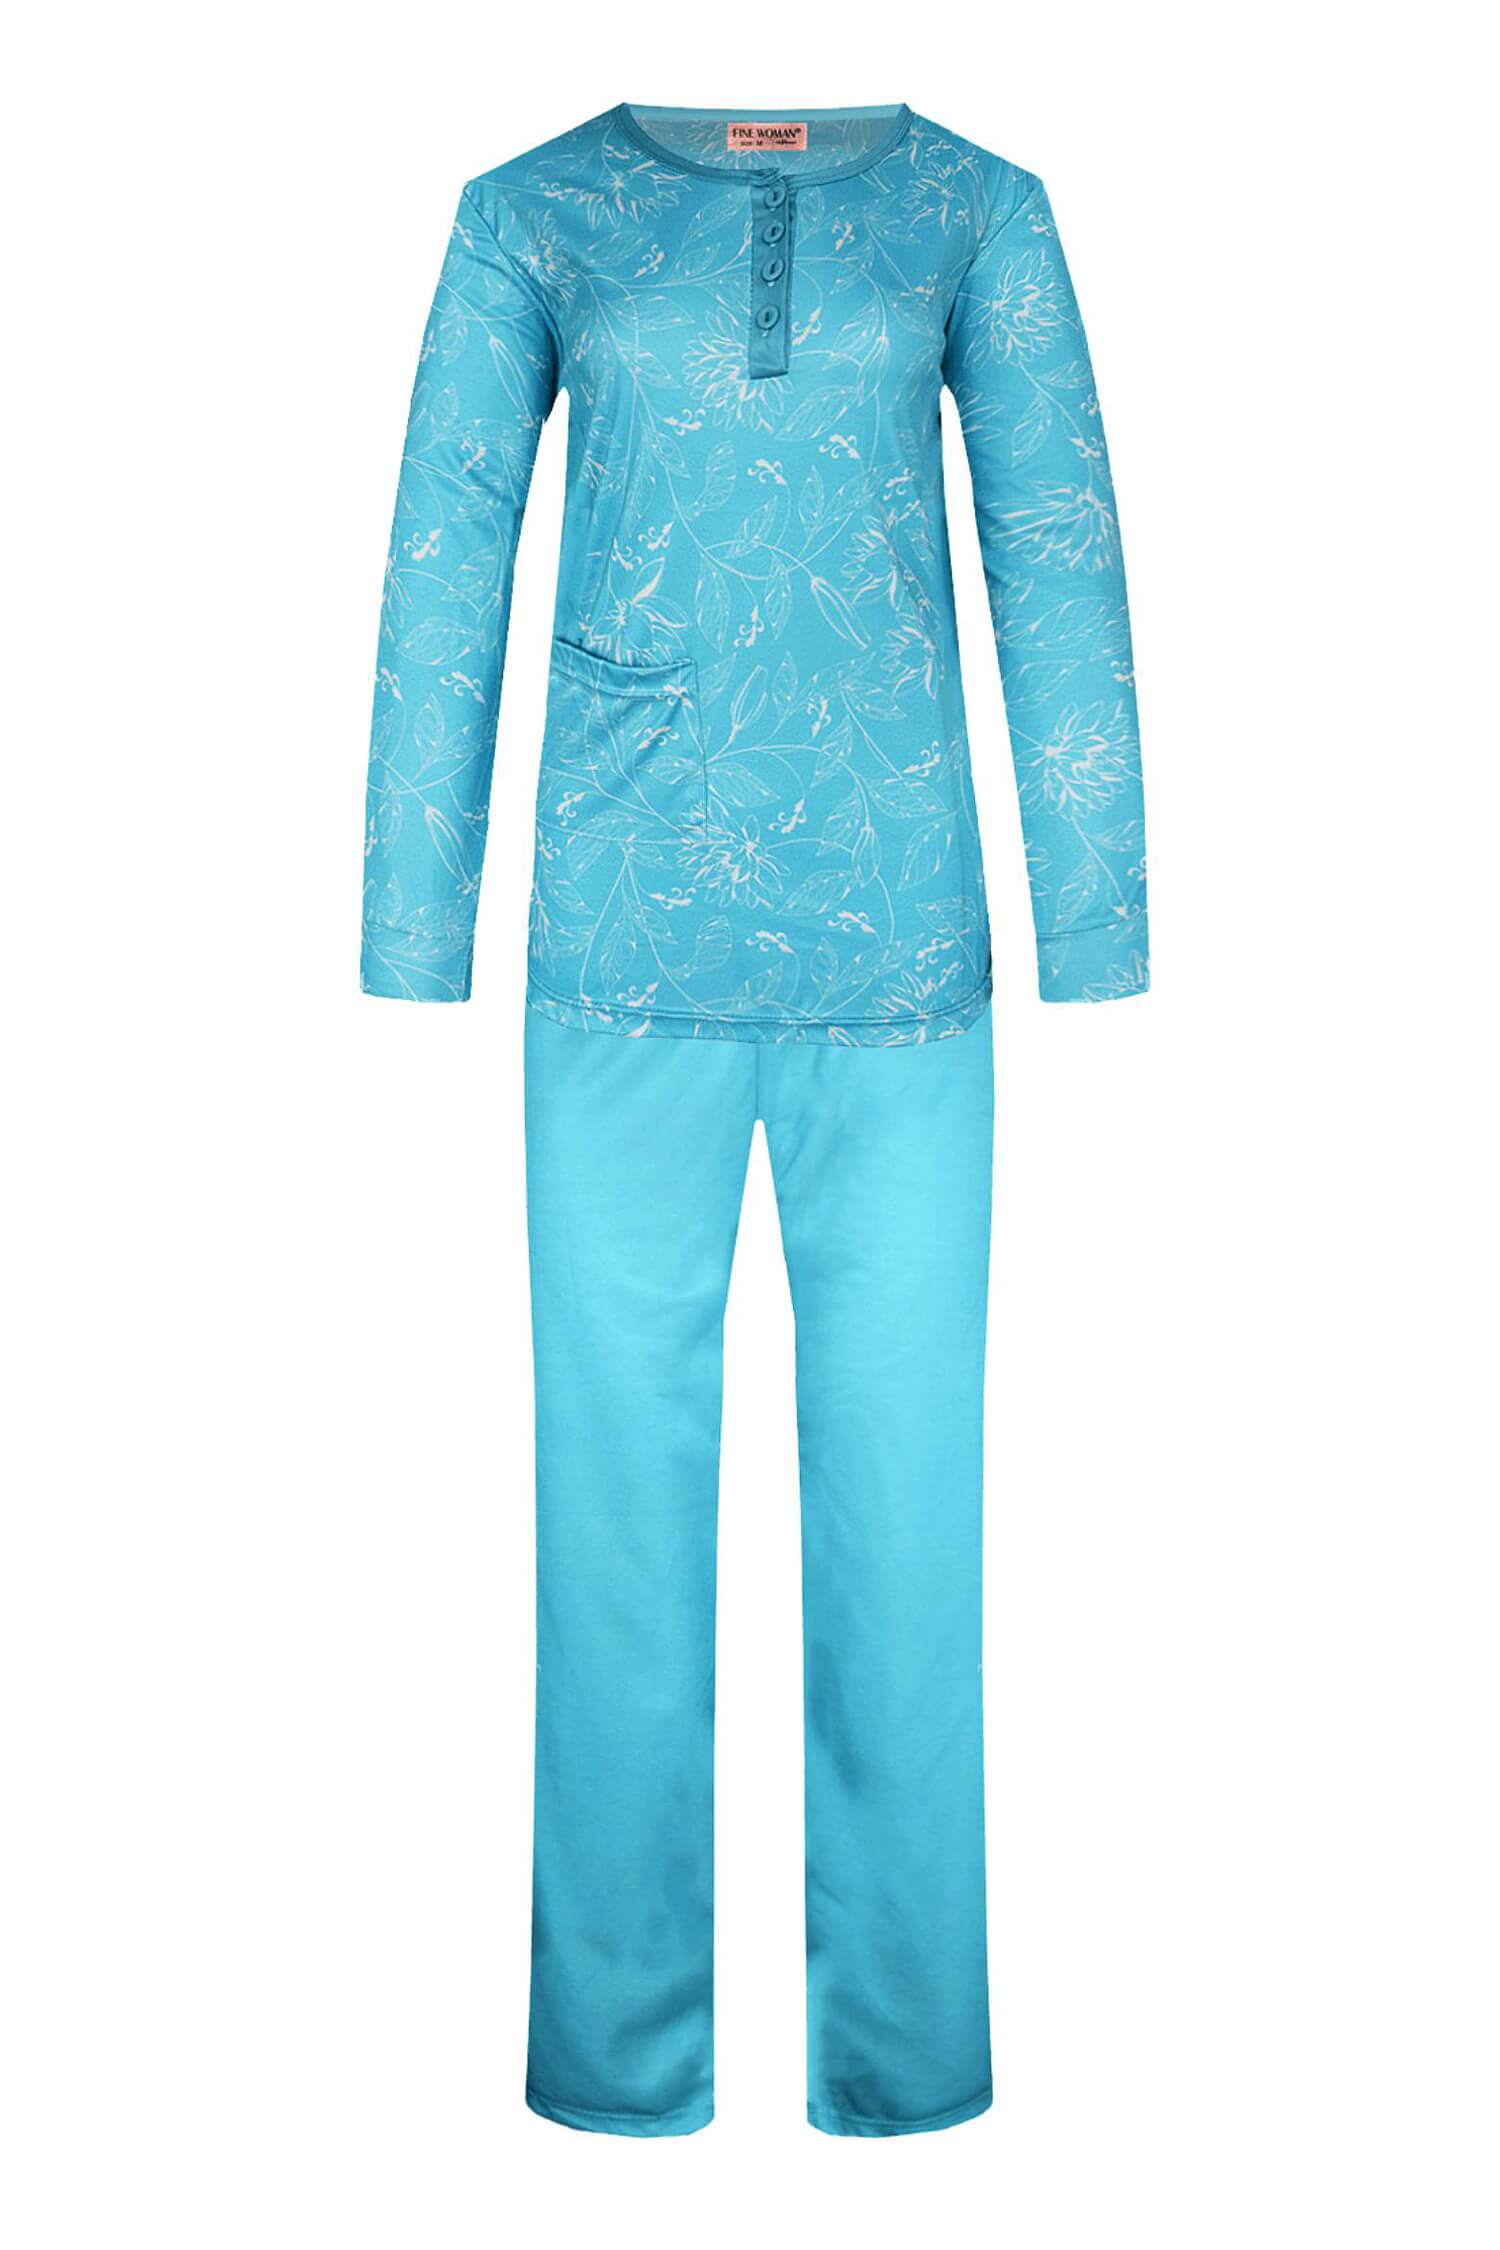 Sára dámské pyžamo dlouhý rukáv 2299 3XL světle modrá